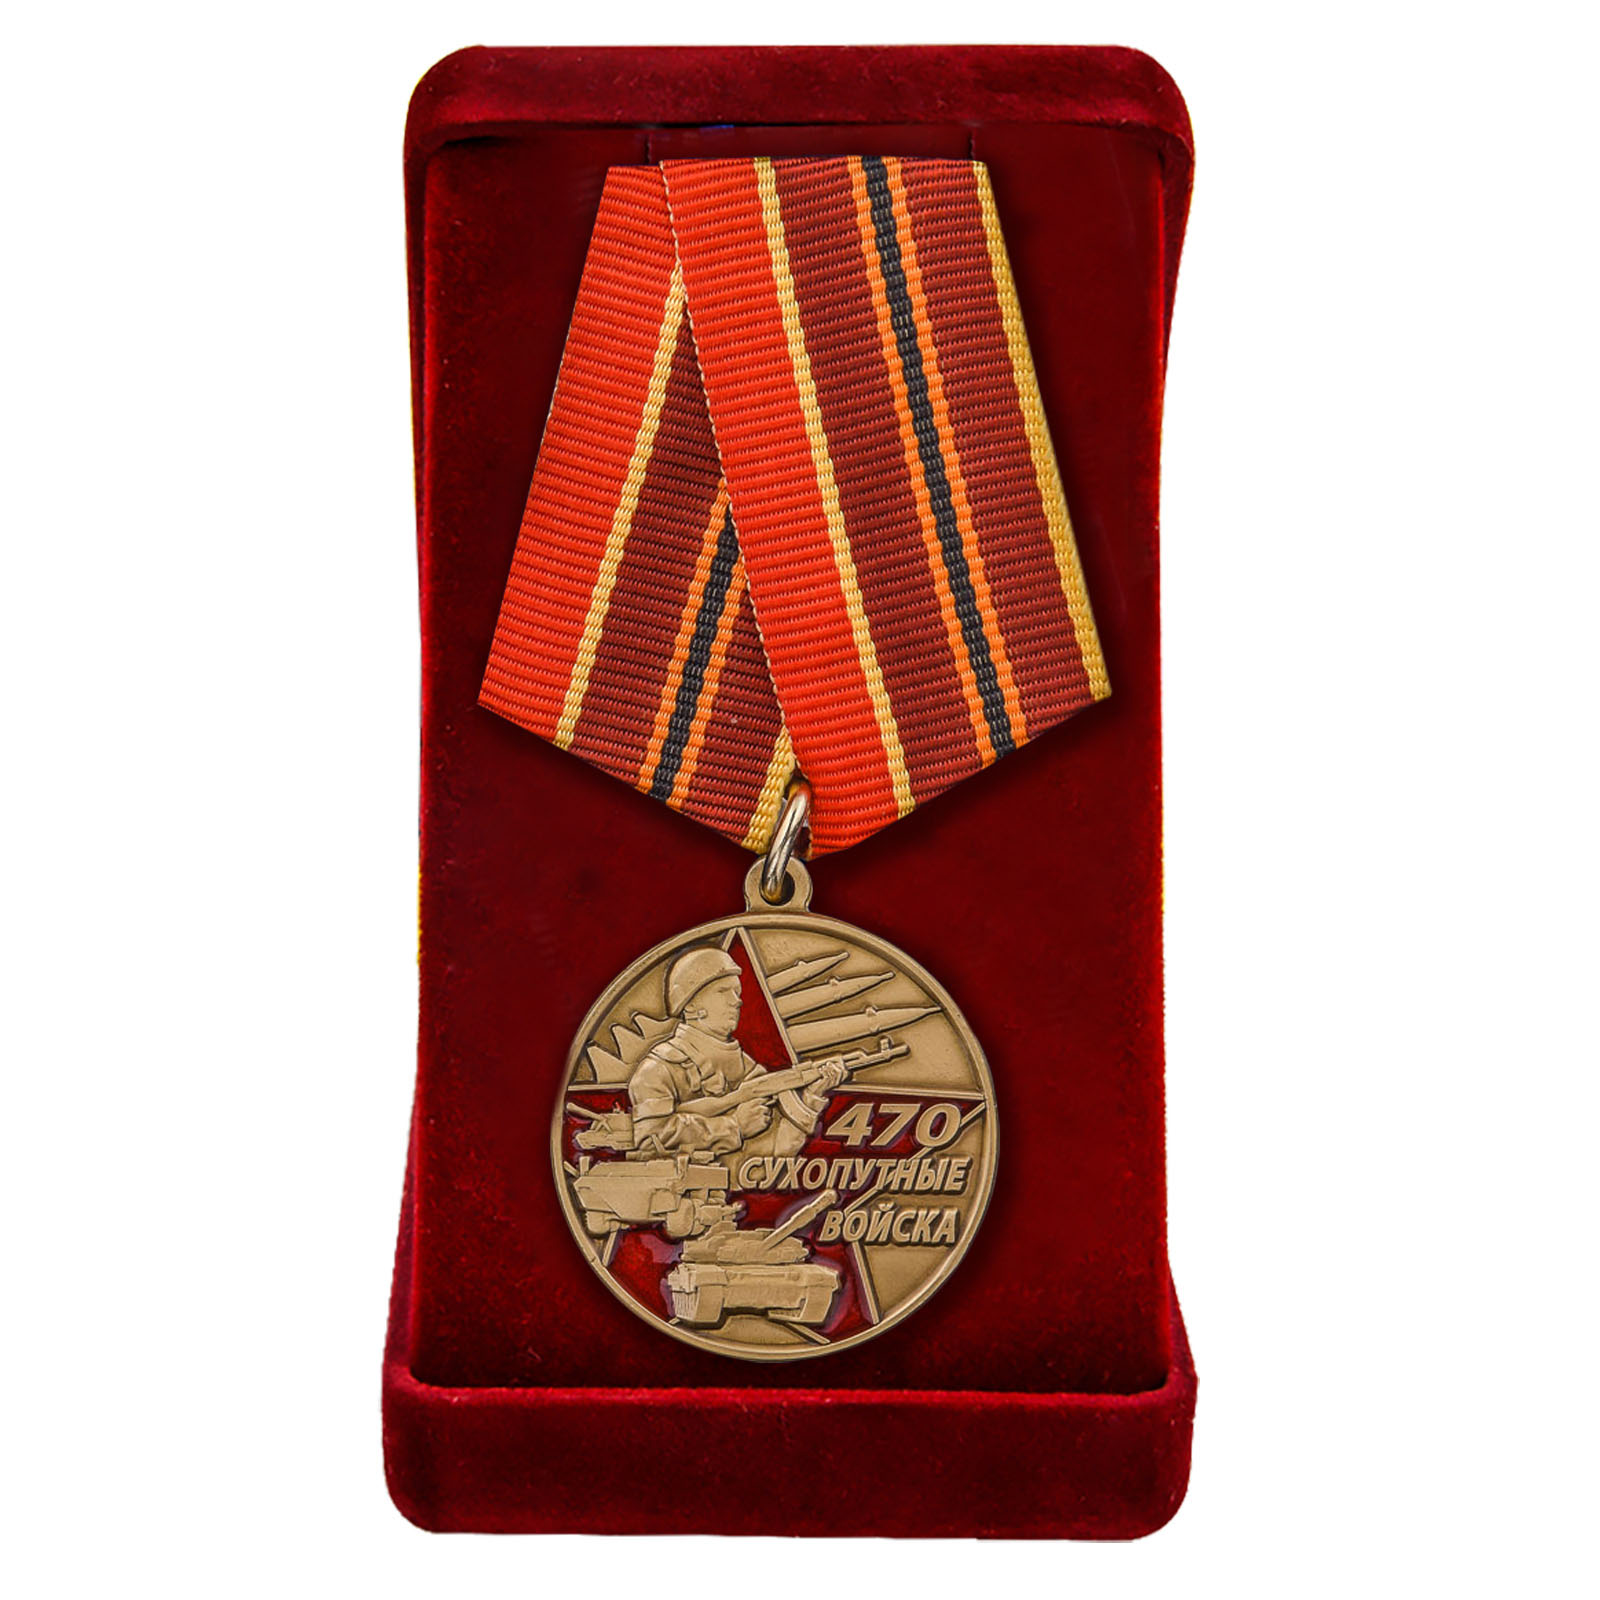 Купить медаль 470 лет Сухопутным войскам с доставкой в ваш город